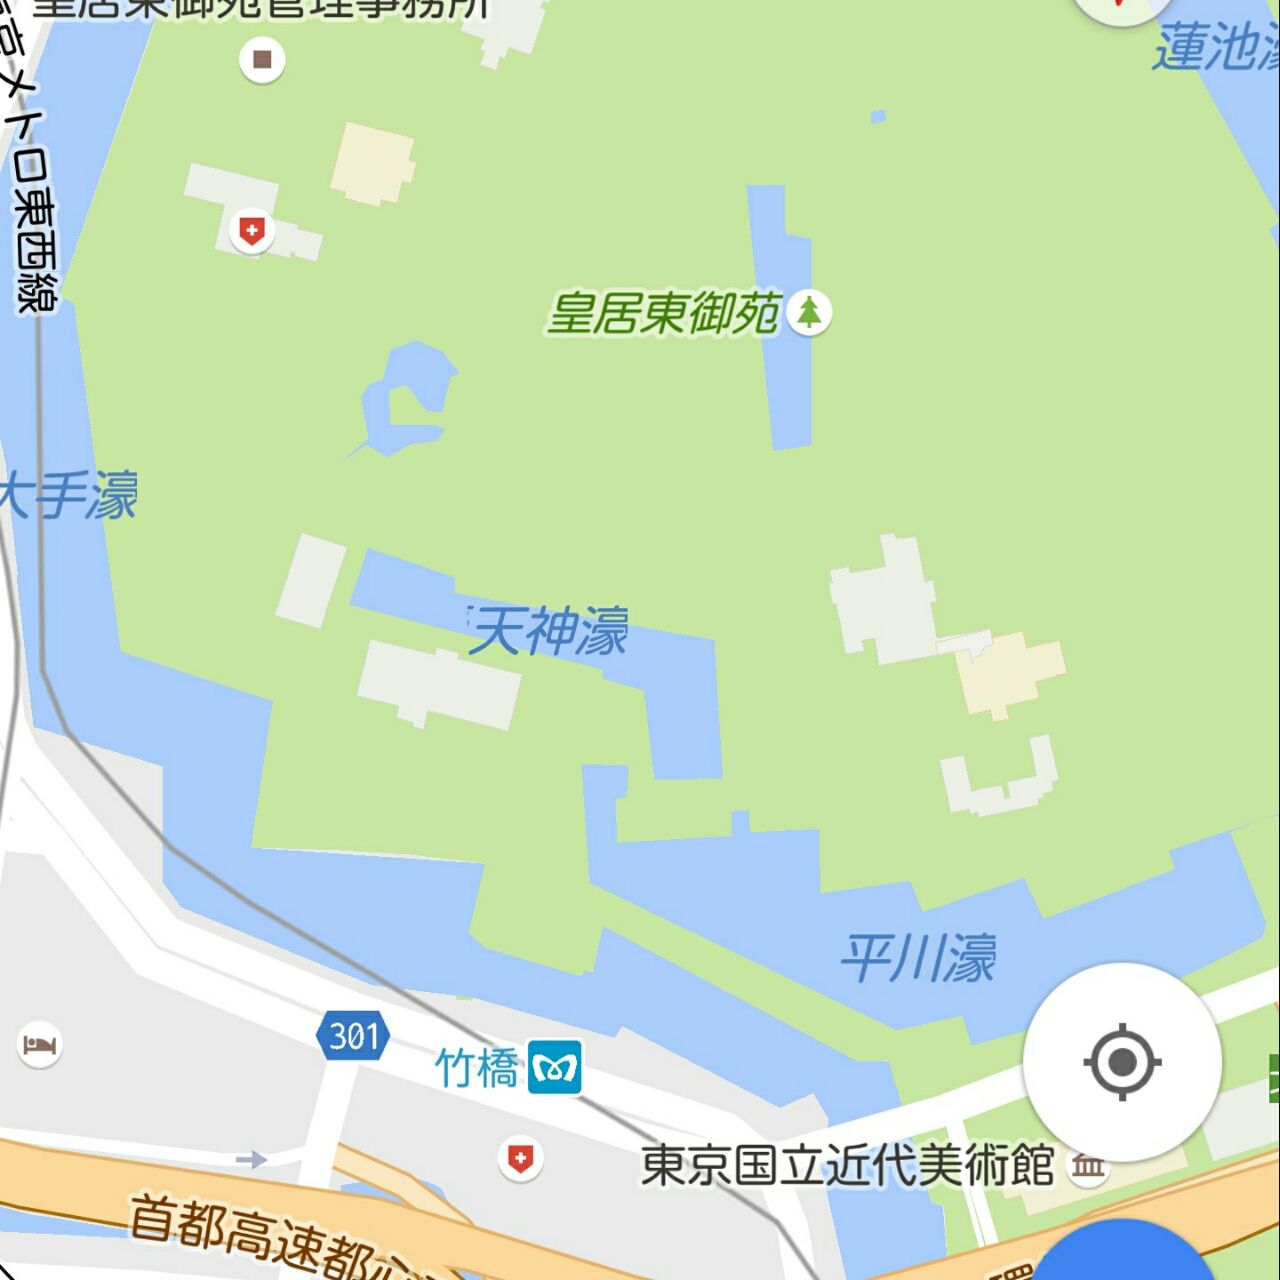 ポケモンgo ポケスポット 公園 千代田区 東京 公園 巡り